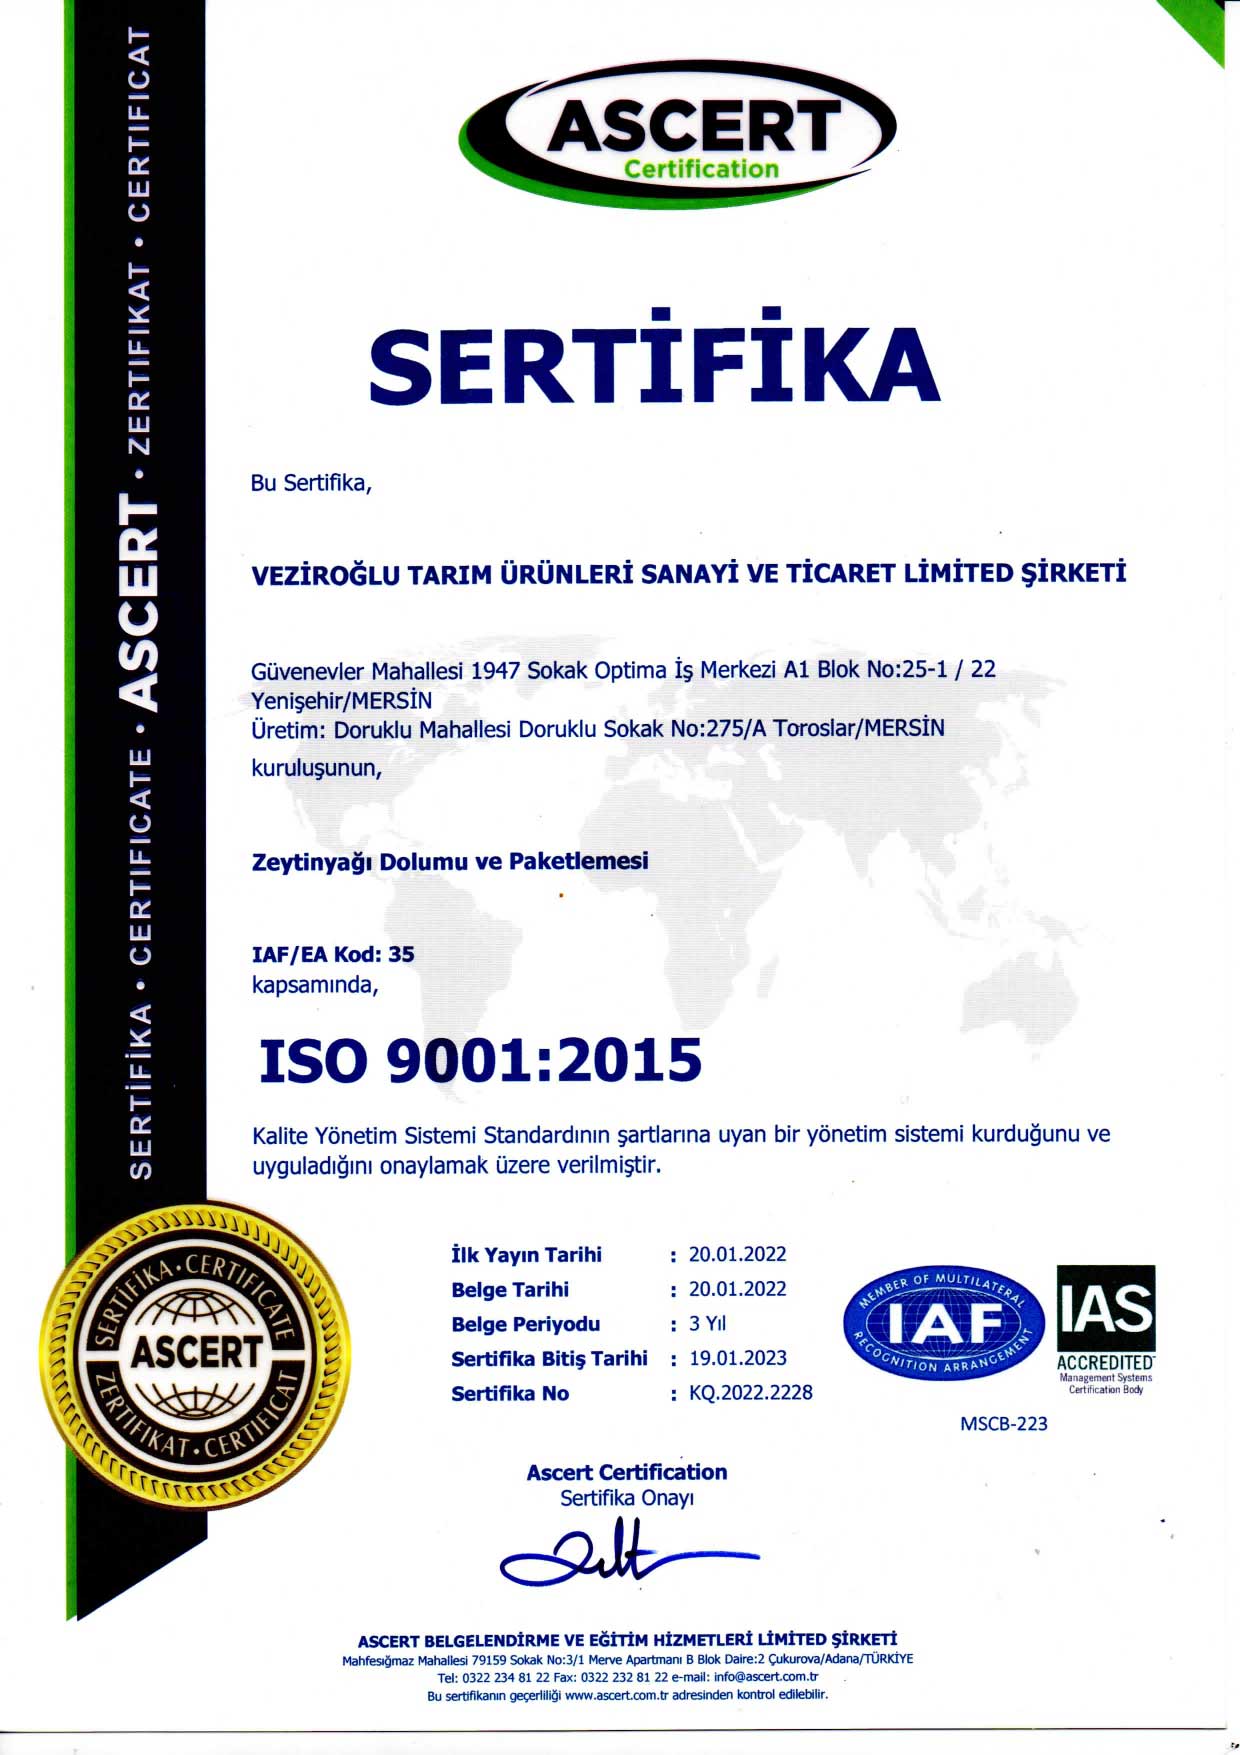 sertifika1.jpg (166 KB)